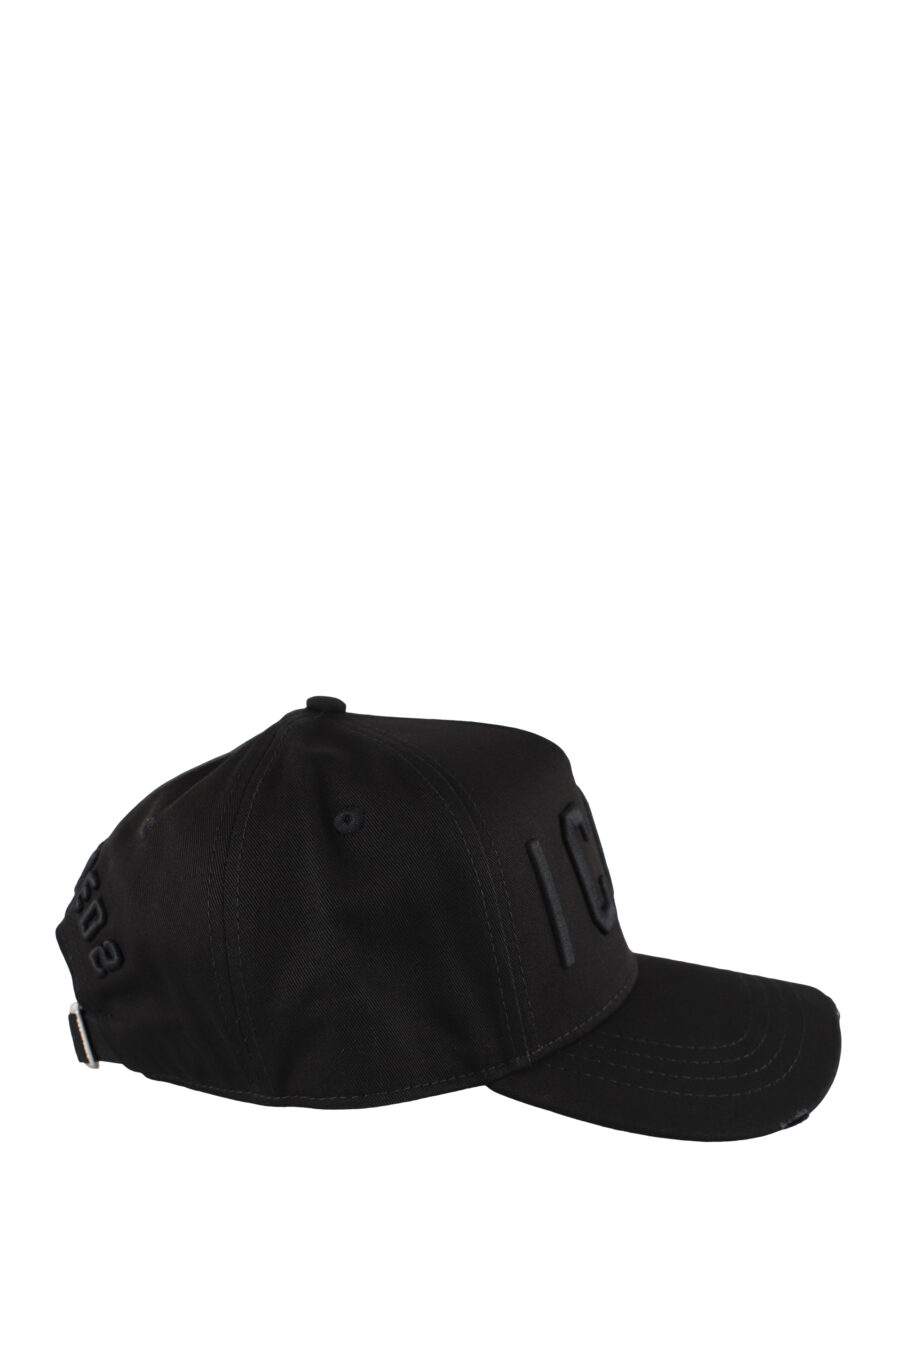 Gorra negra con logo "icon" monocromático - IMG 5165